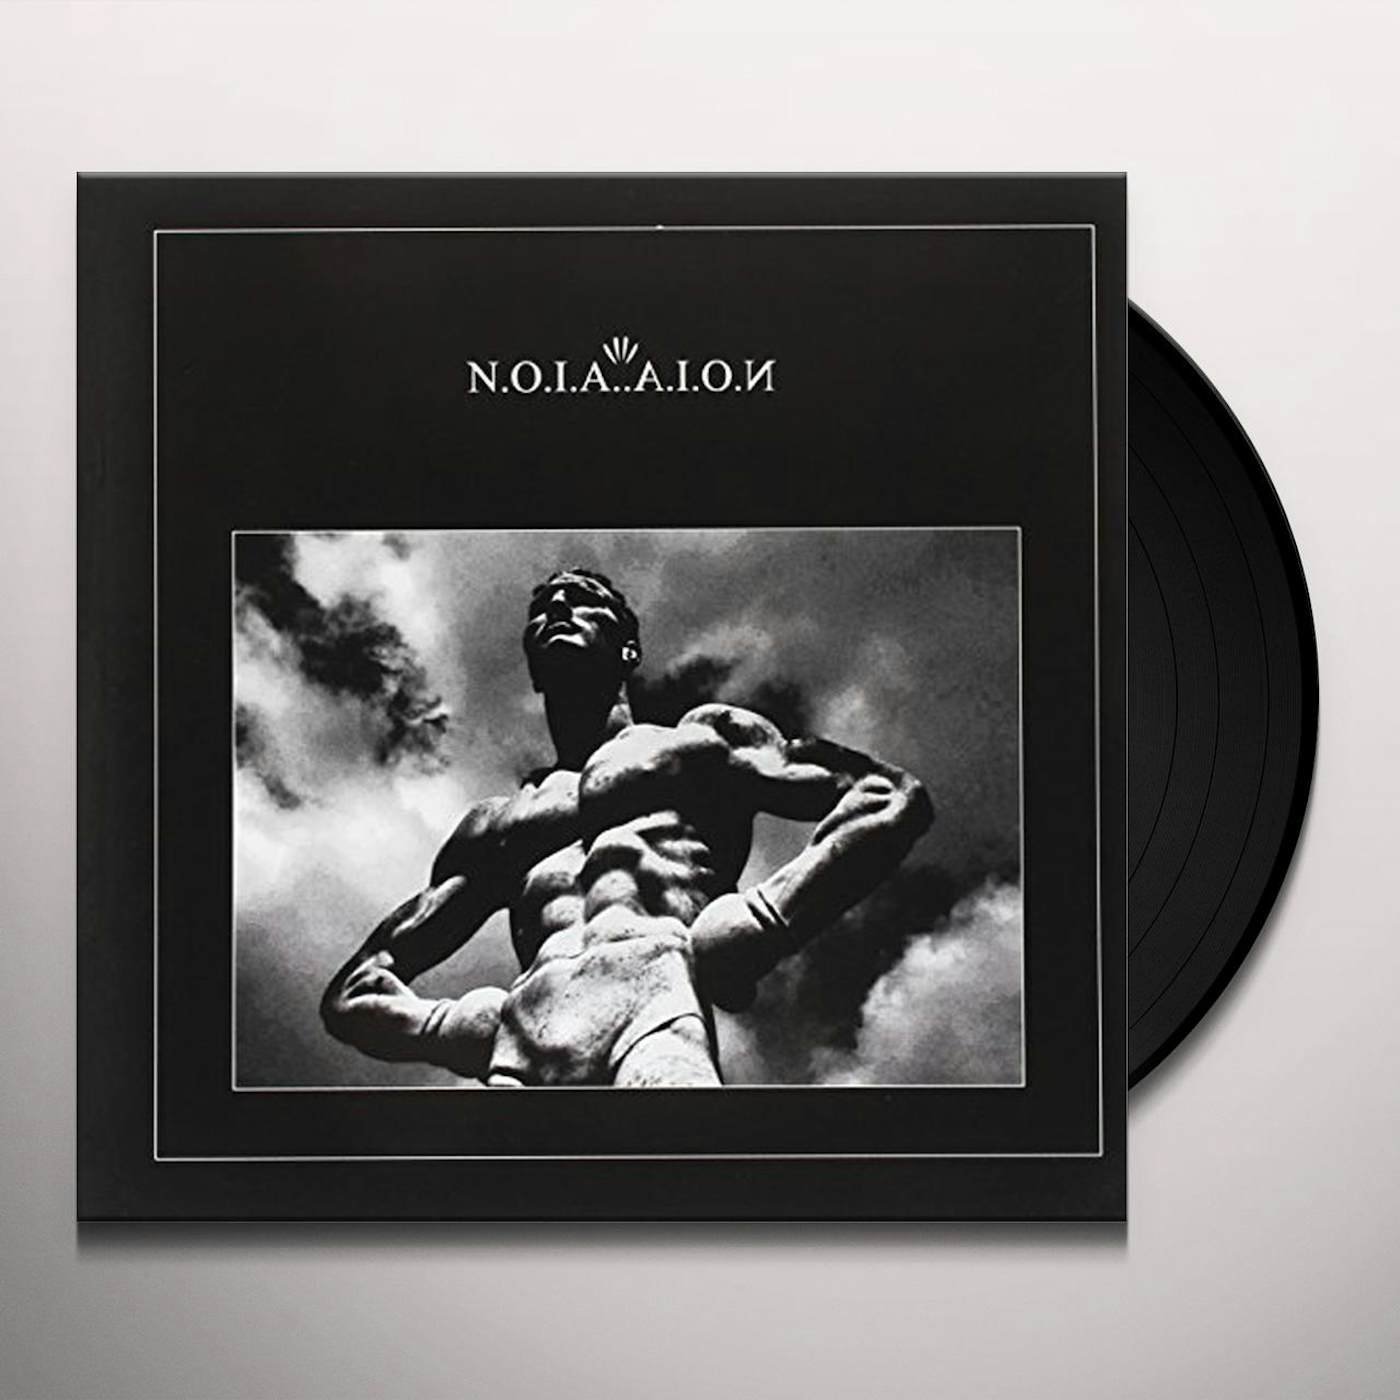 N.O.I.A. A.I.O.N. Vinyl Record